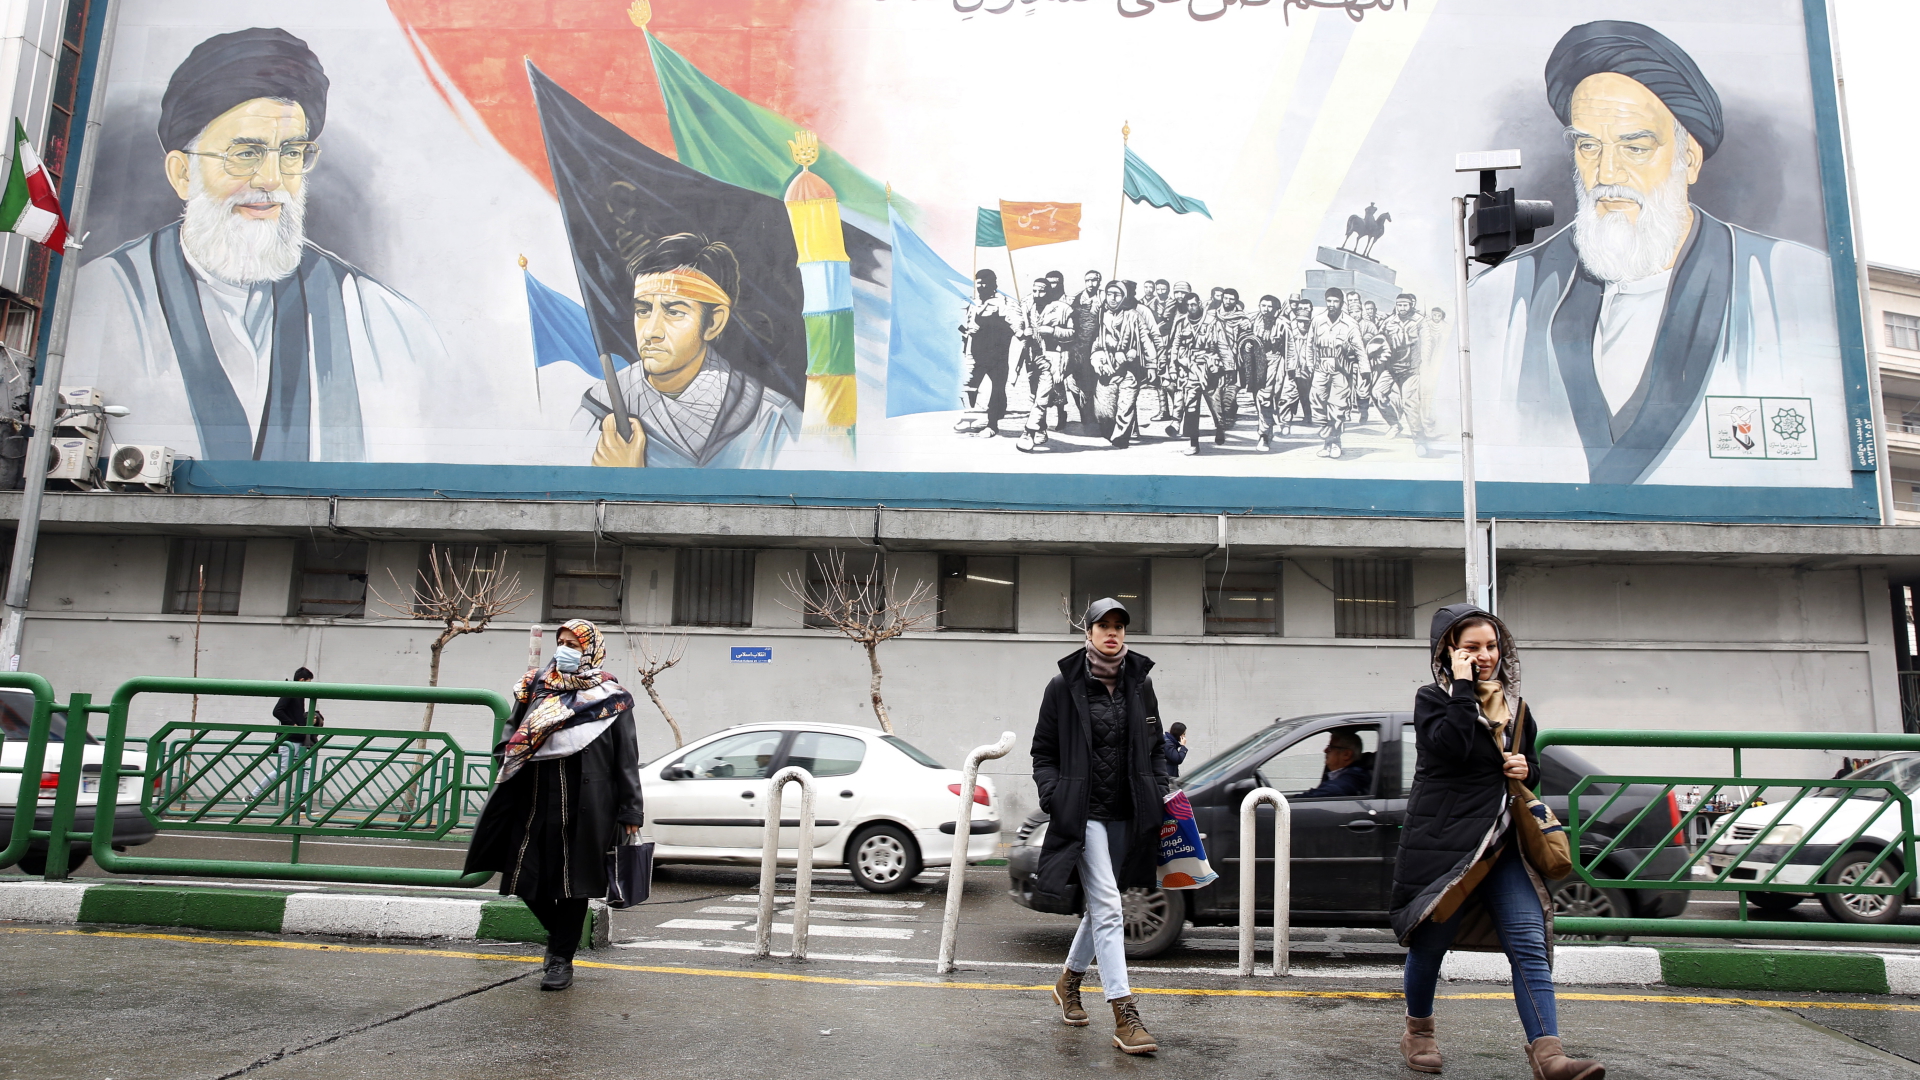 Menschen gehen in der Innenstadt von Teheran unter einem riesigen Wandgemälde von Ayatollah Ruhollah Khomeini (r.) und Ayatollah Ali Khamenei (l.) entlang. | EPA